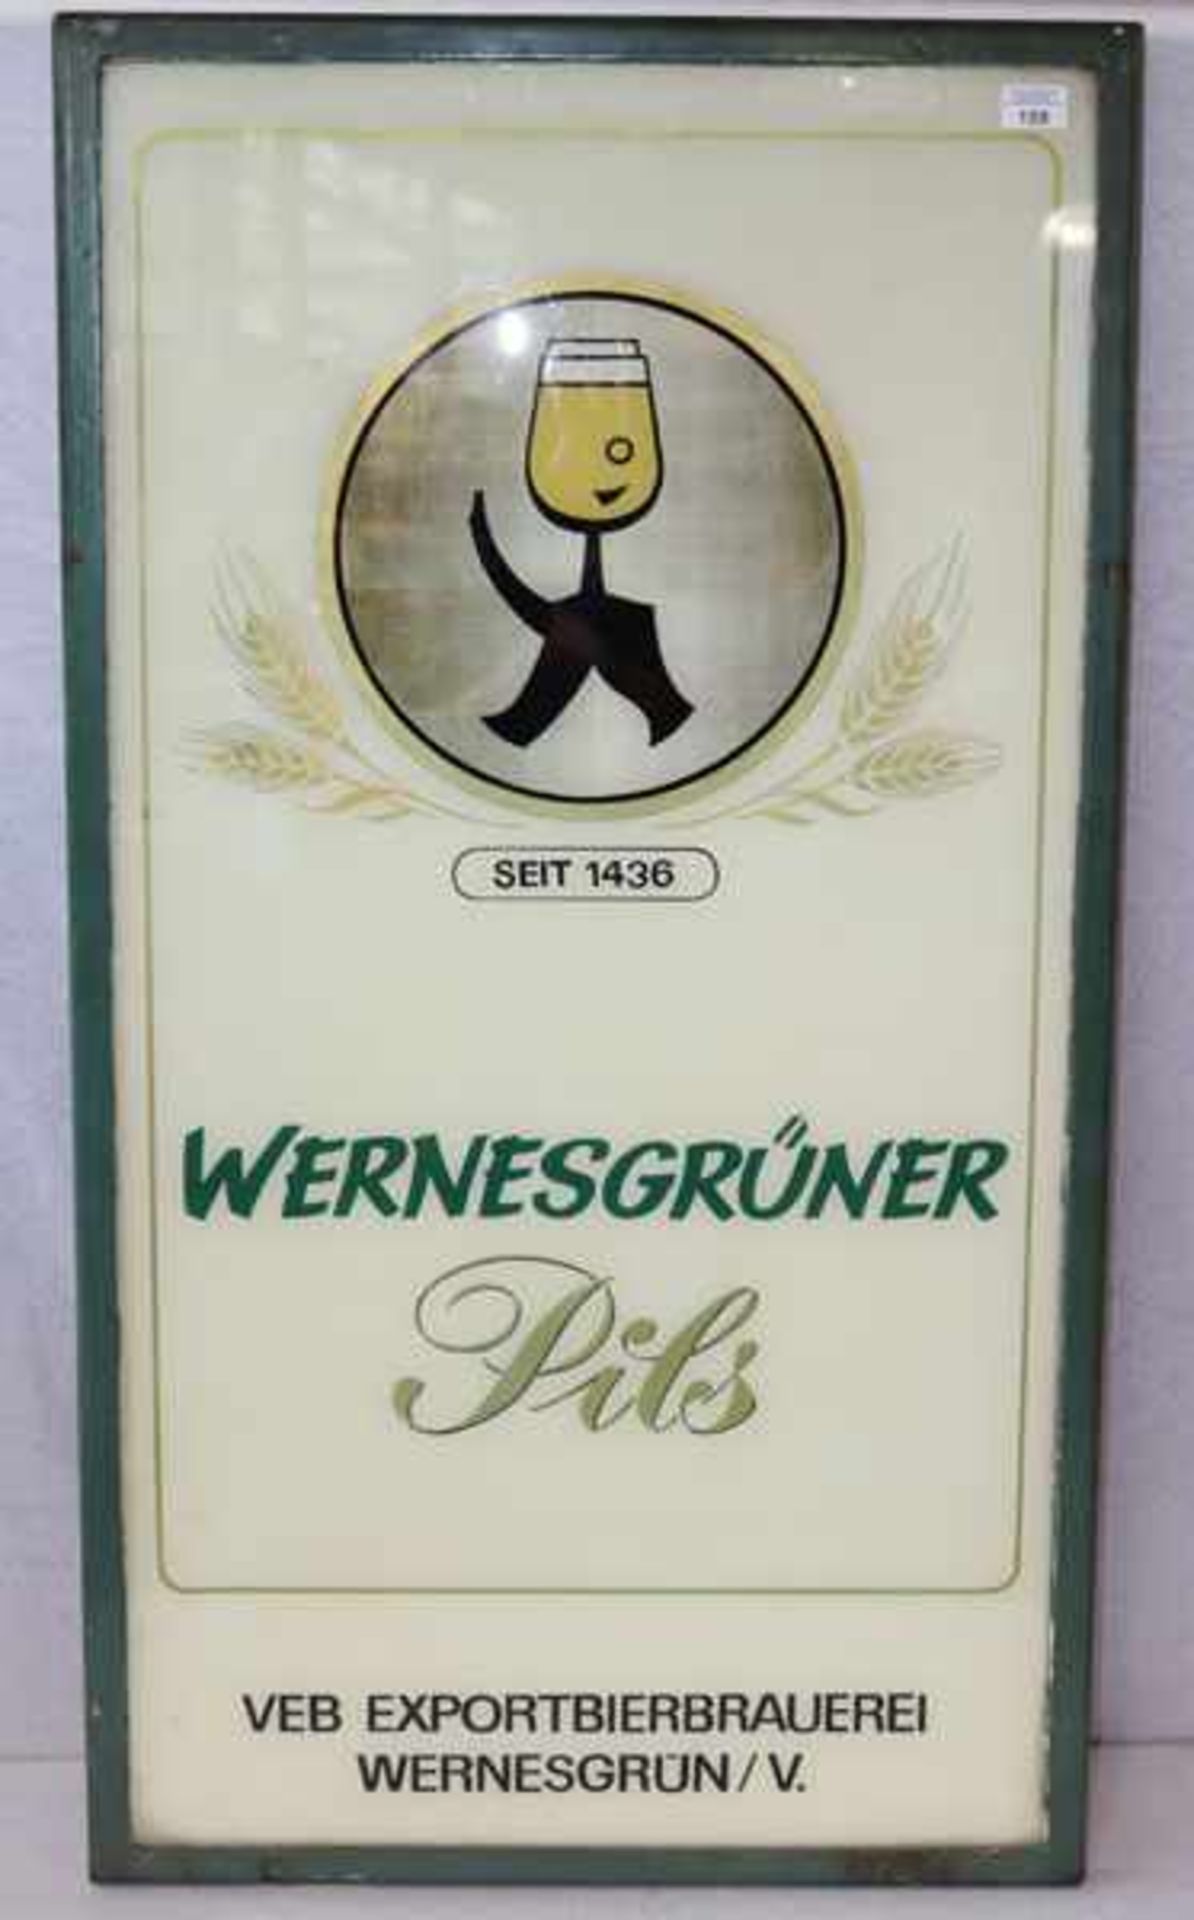 Großes Brauereischild 'Wernesgrüner Pils seit 1436, VEB-Exportbierbrauerei Wernesgrün/V.', aus der